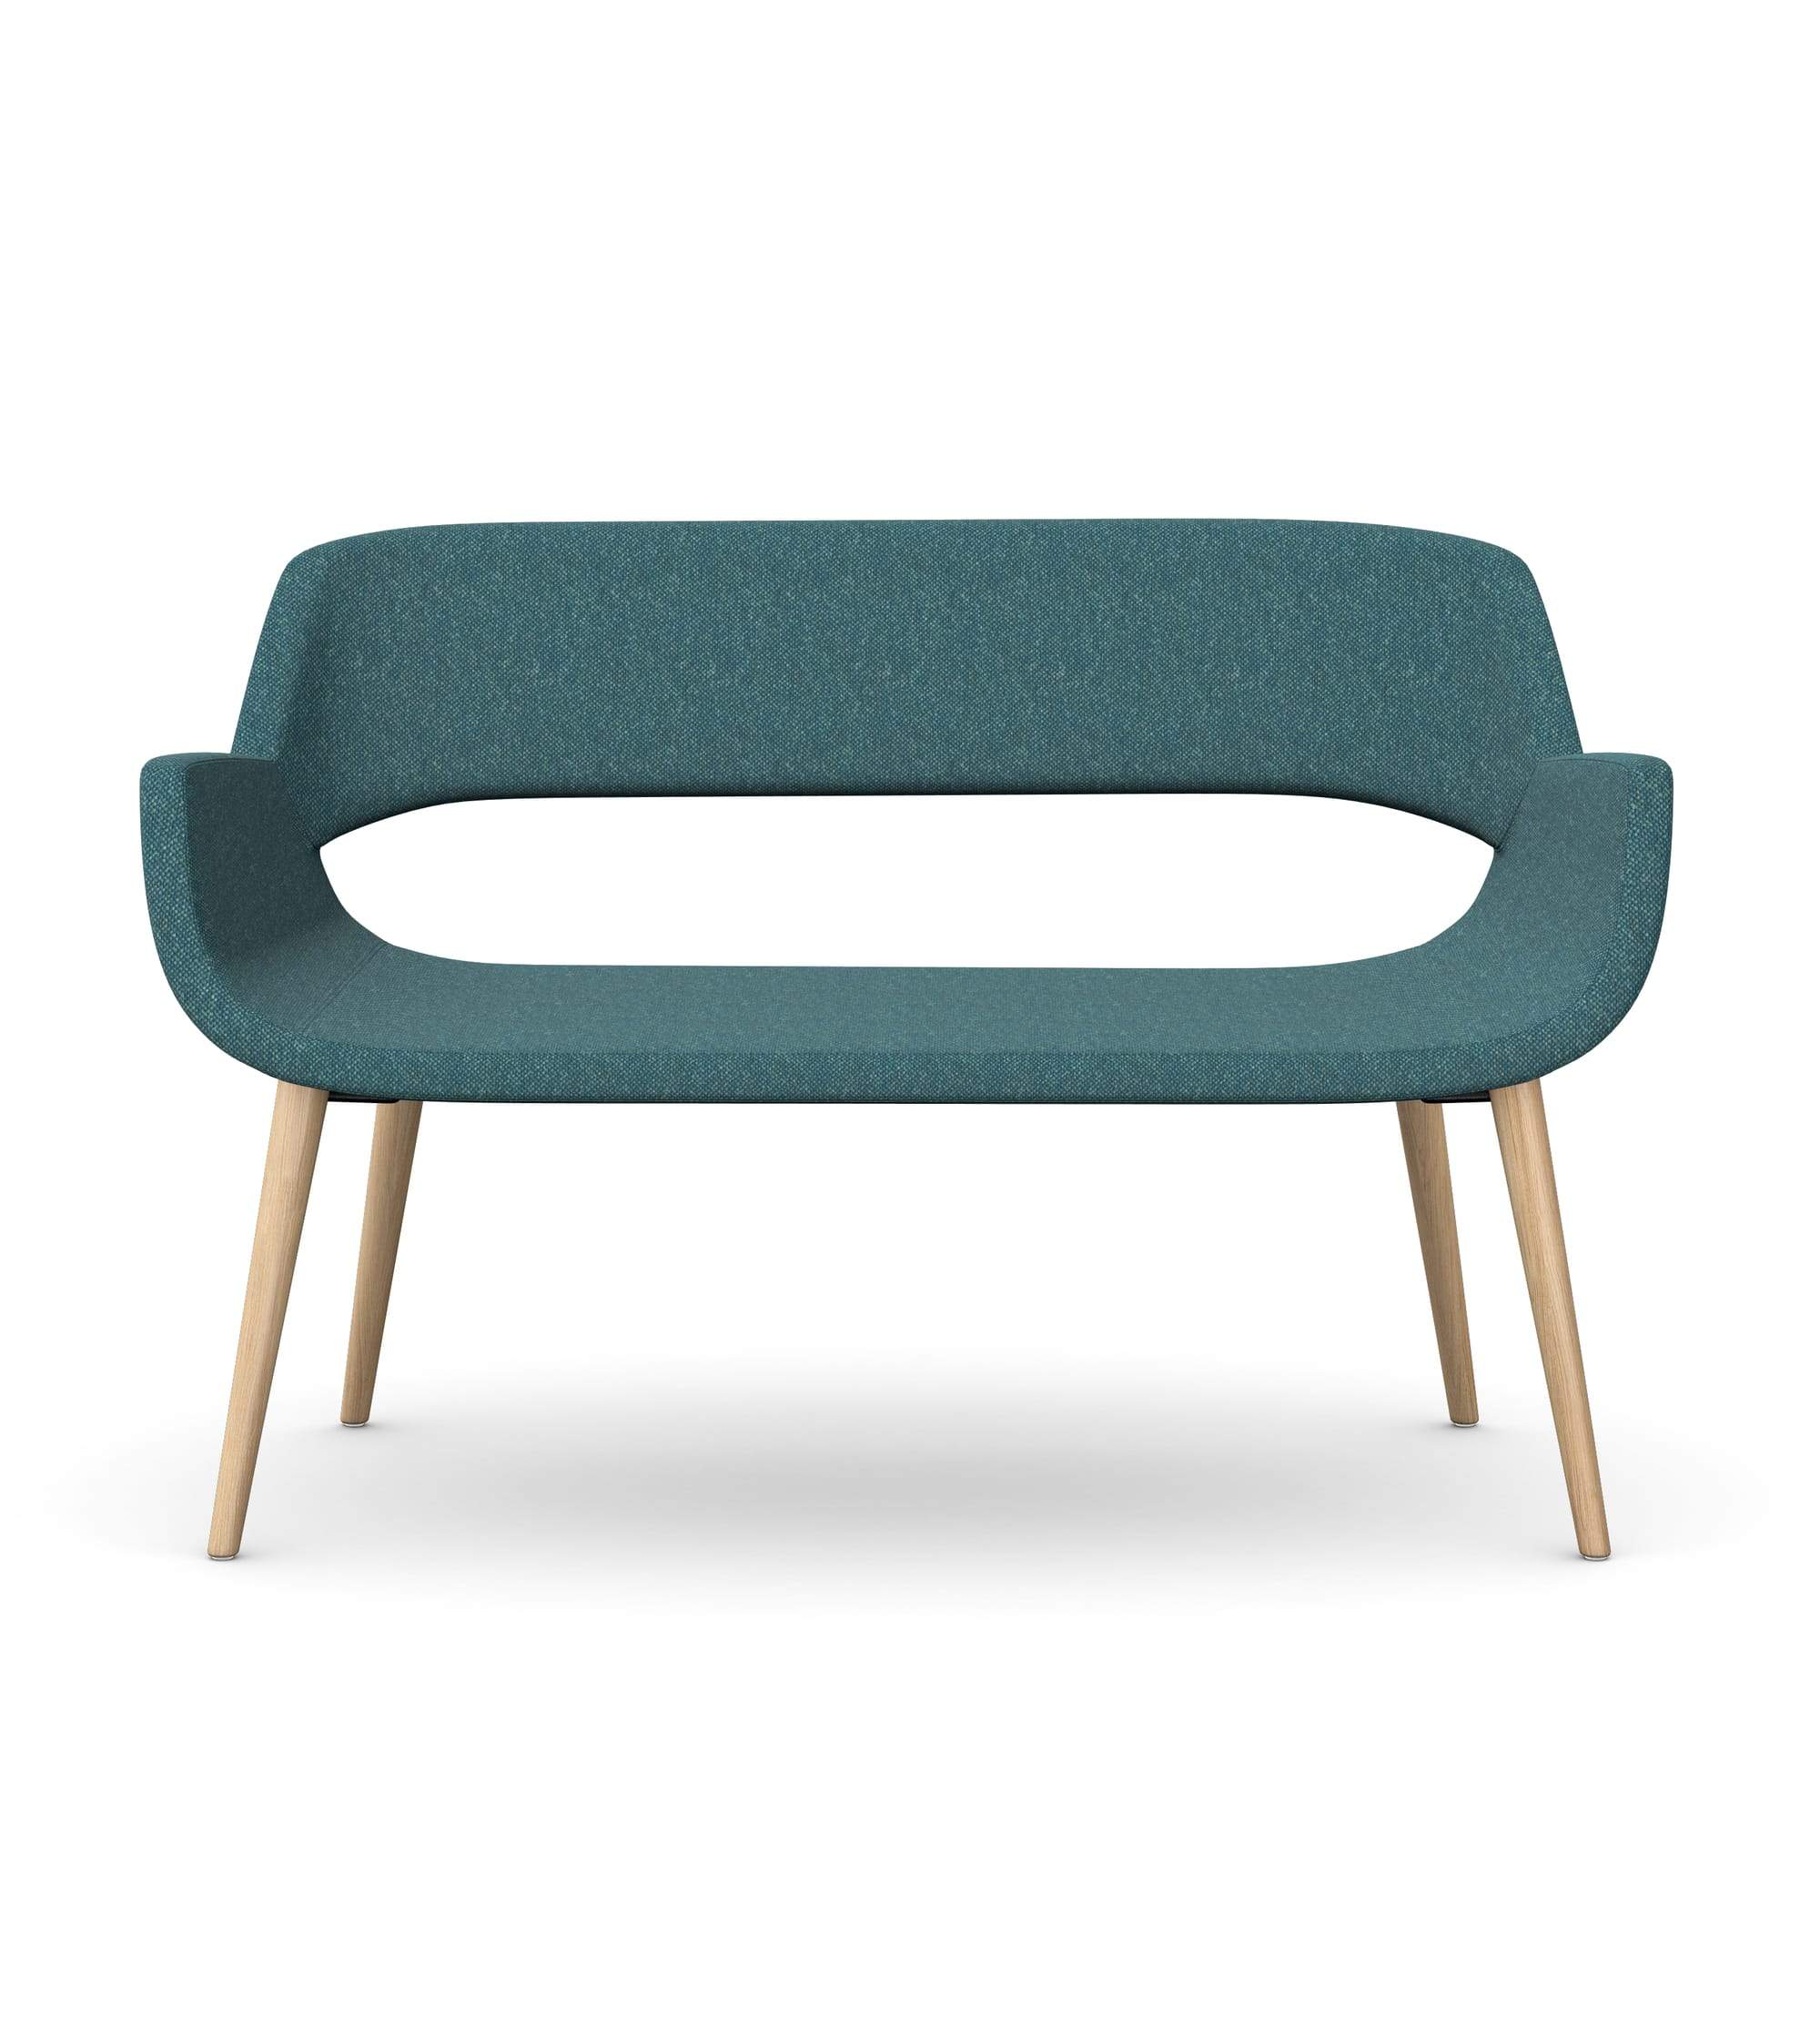 FIELDER - Two Seat Sofa, 4 Wooden Legs